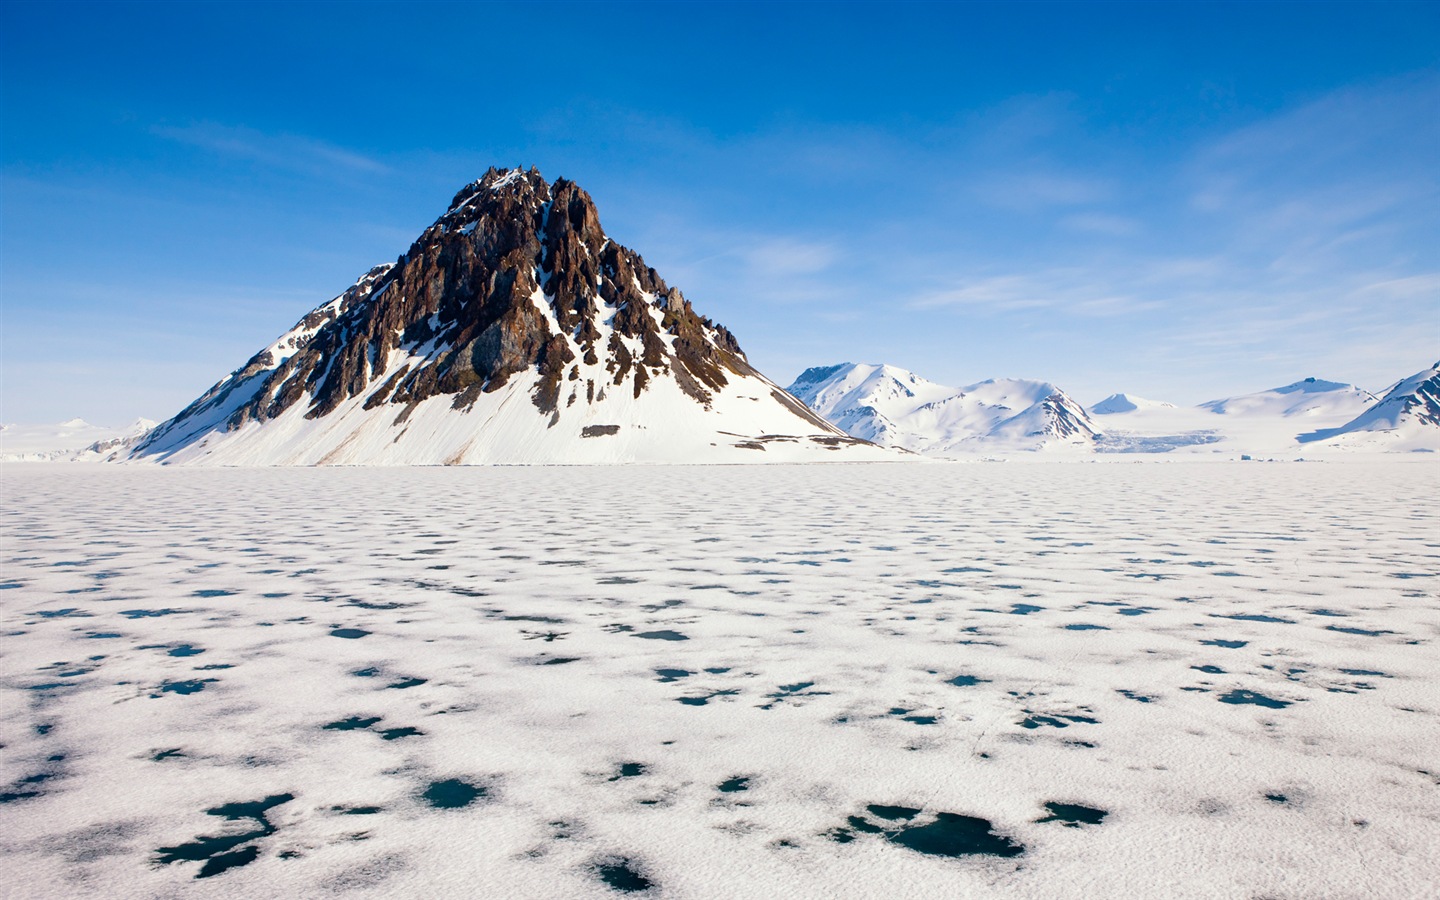 Windows 8: Fondos del Ártico, el paisaje ecológico, ártico animales #1 - 1440x900